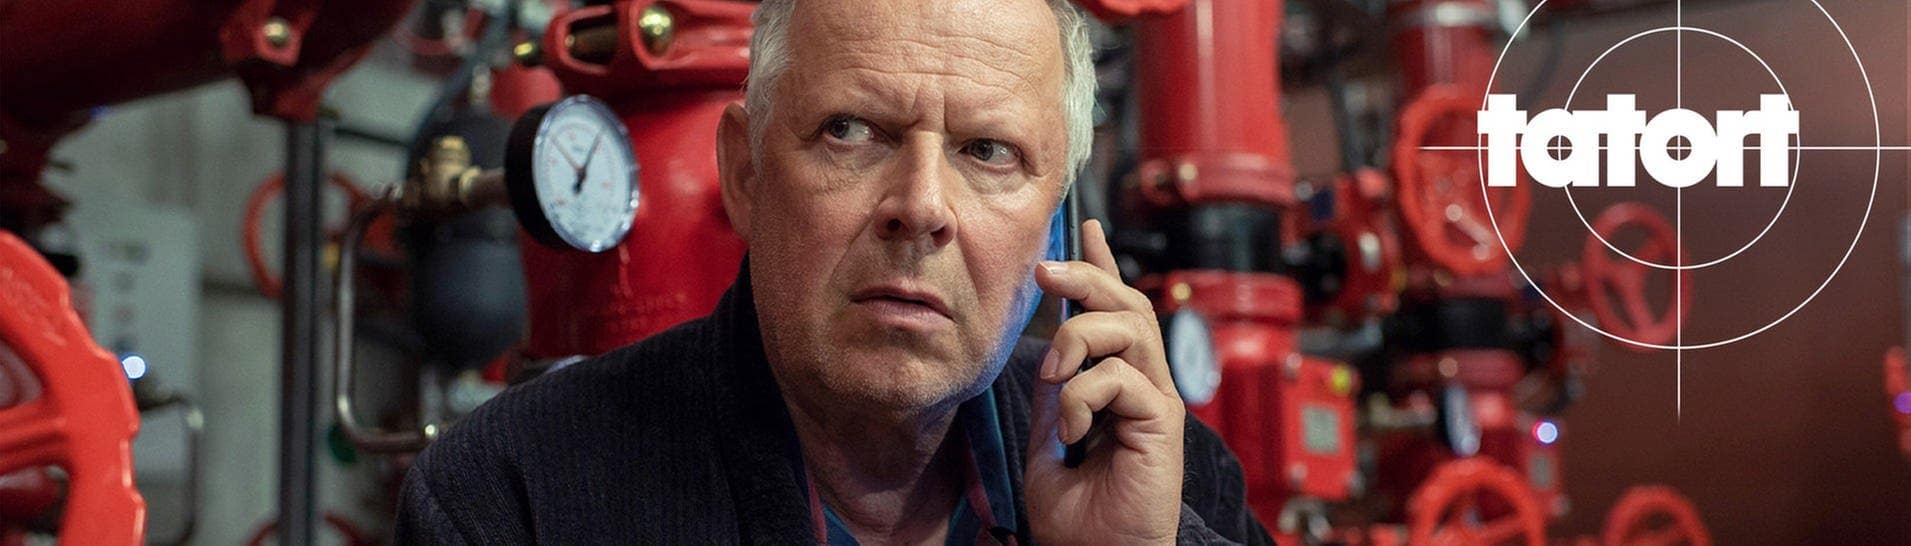 Tatort Kiel: Borowski am Telefon (Foto: ard-foto s2-intern/extern, NDR / ARD / Thorsten Jander)